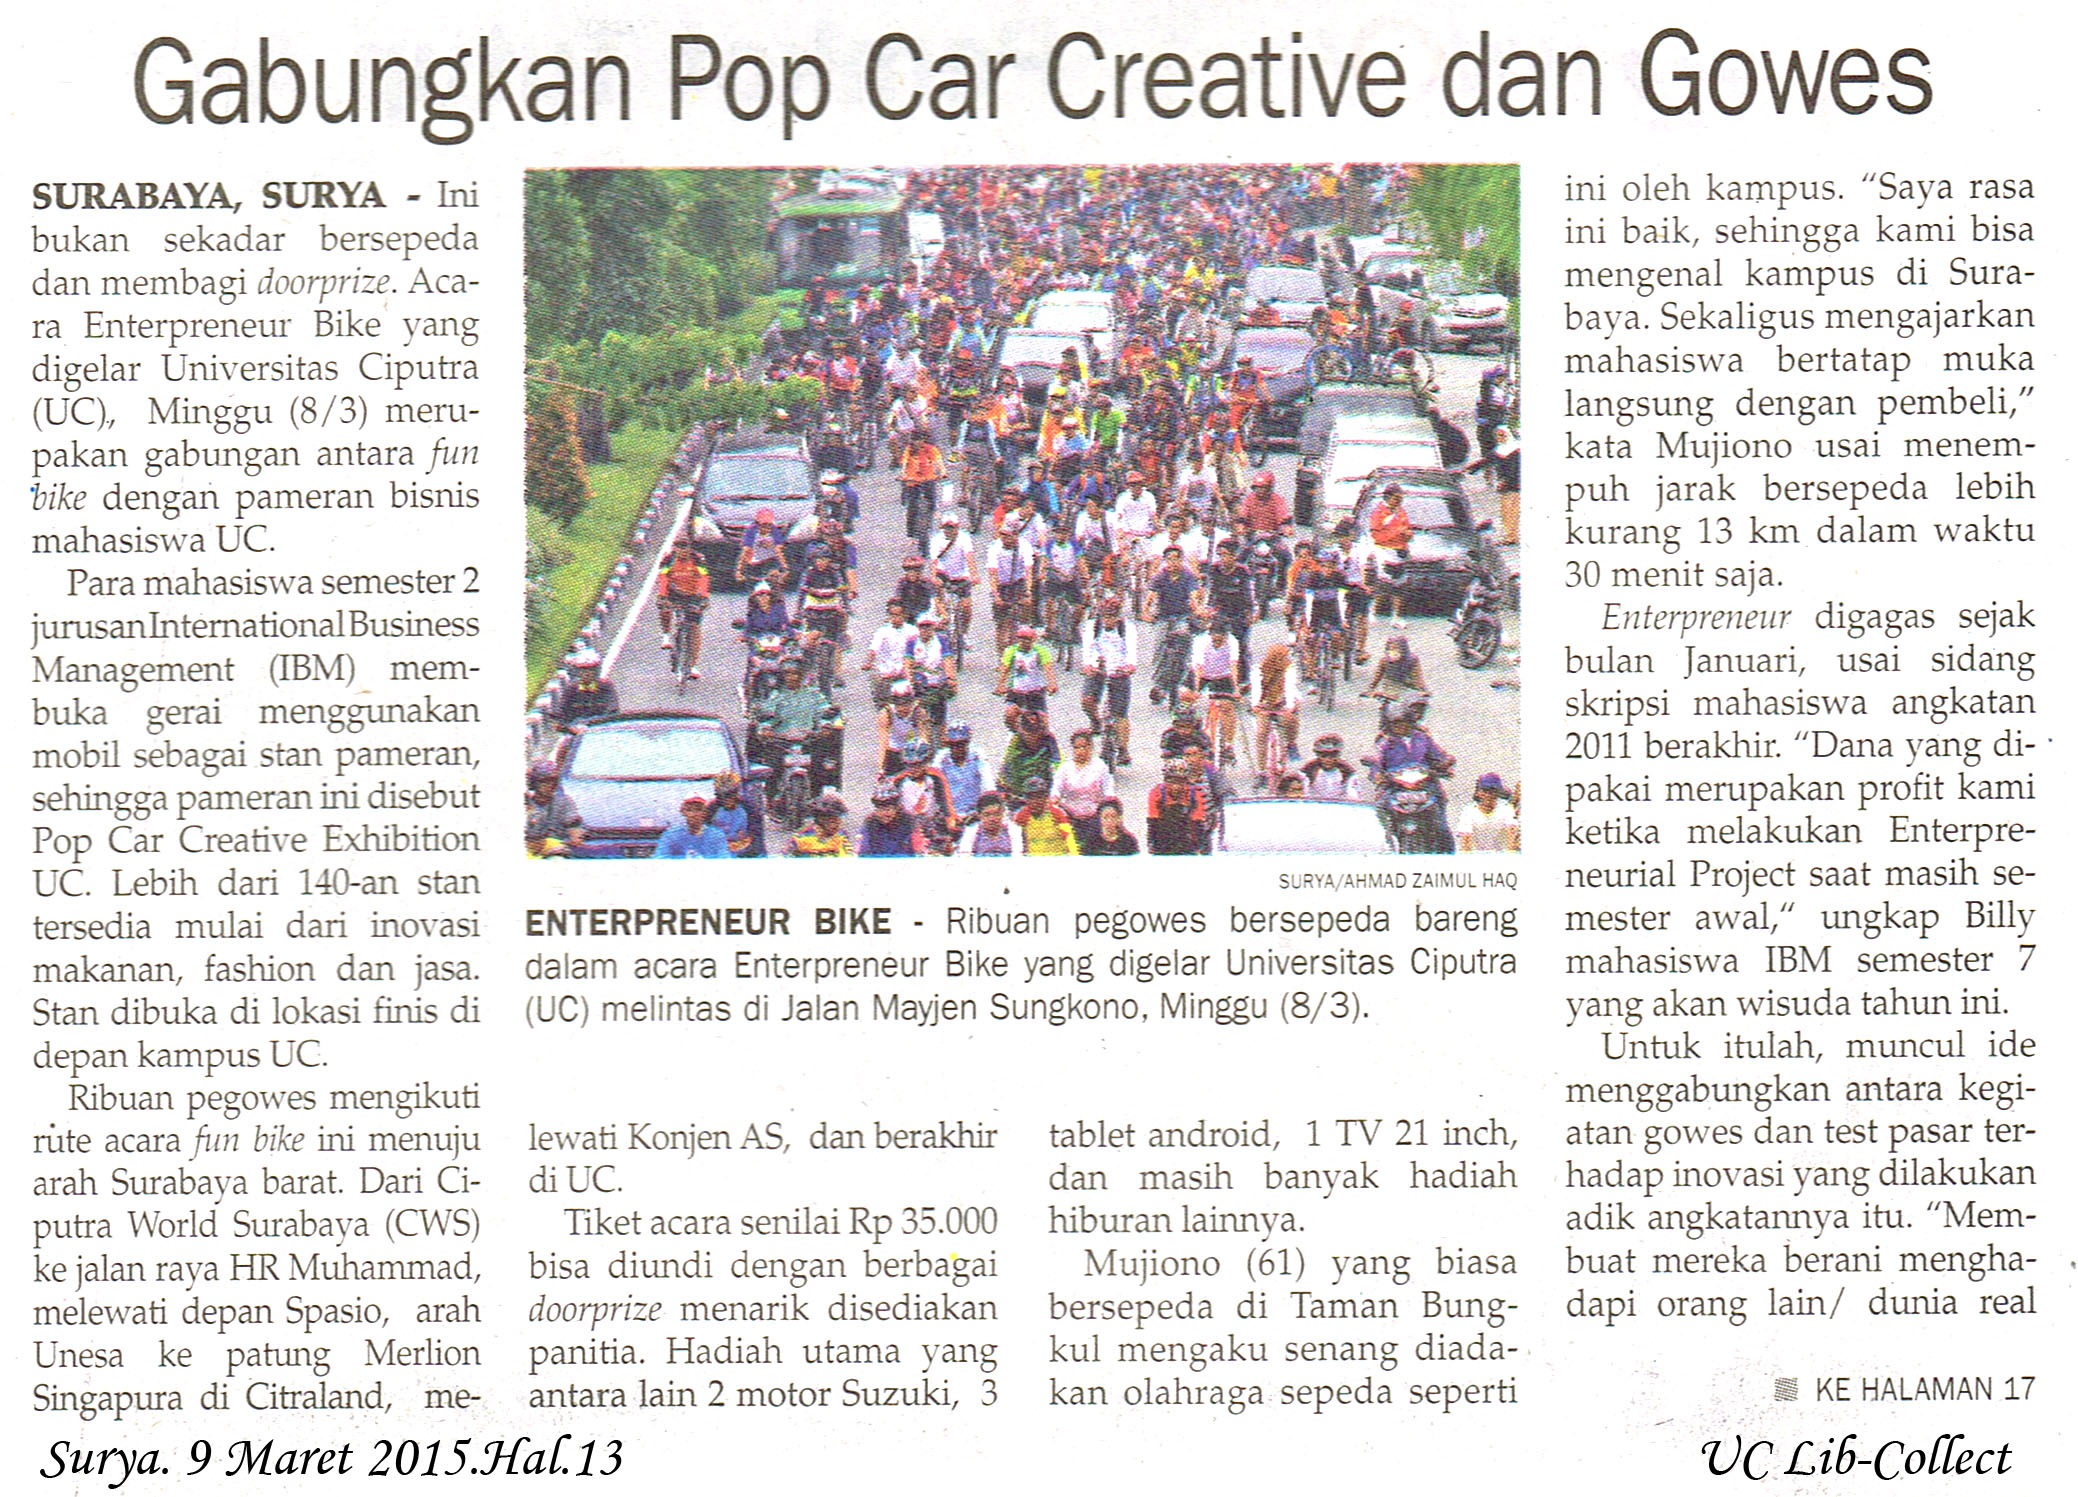 Gabungan Pop Car Creative dan Gowes Surya 9 Maret 2015 Hal 13